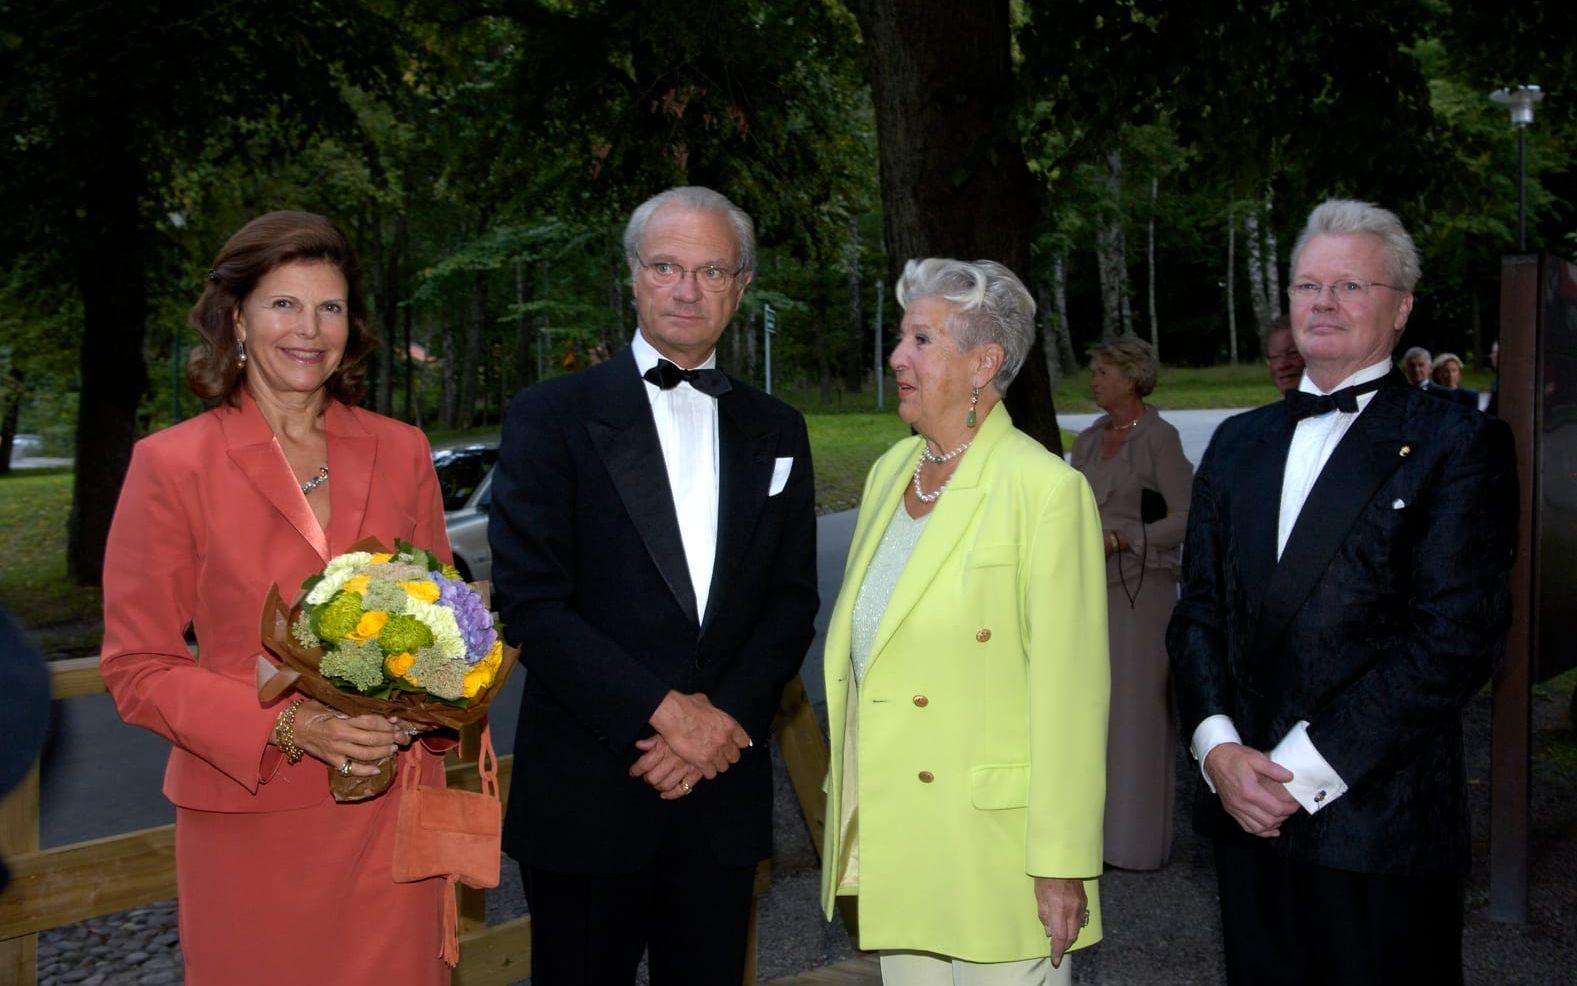  Kungaparet drottning Silvia och kung Carl Gustaf anländer tillsammans med sångerskan Kjerstin Dellert och hennes man Nils-Åke Häggbom till Confidencen vid Ulriksdals slott där Gösta Winbergh Award 2006 ska delas ut. 